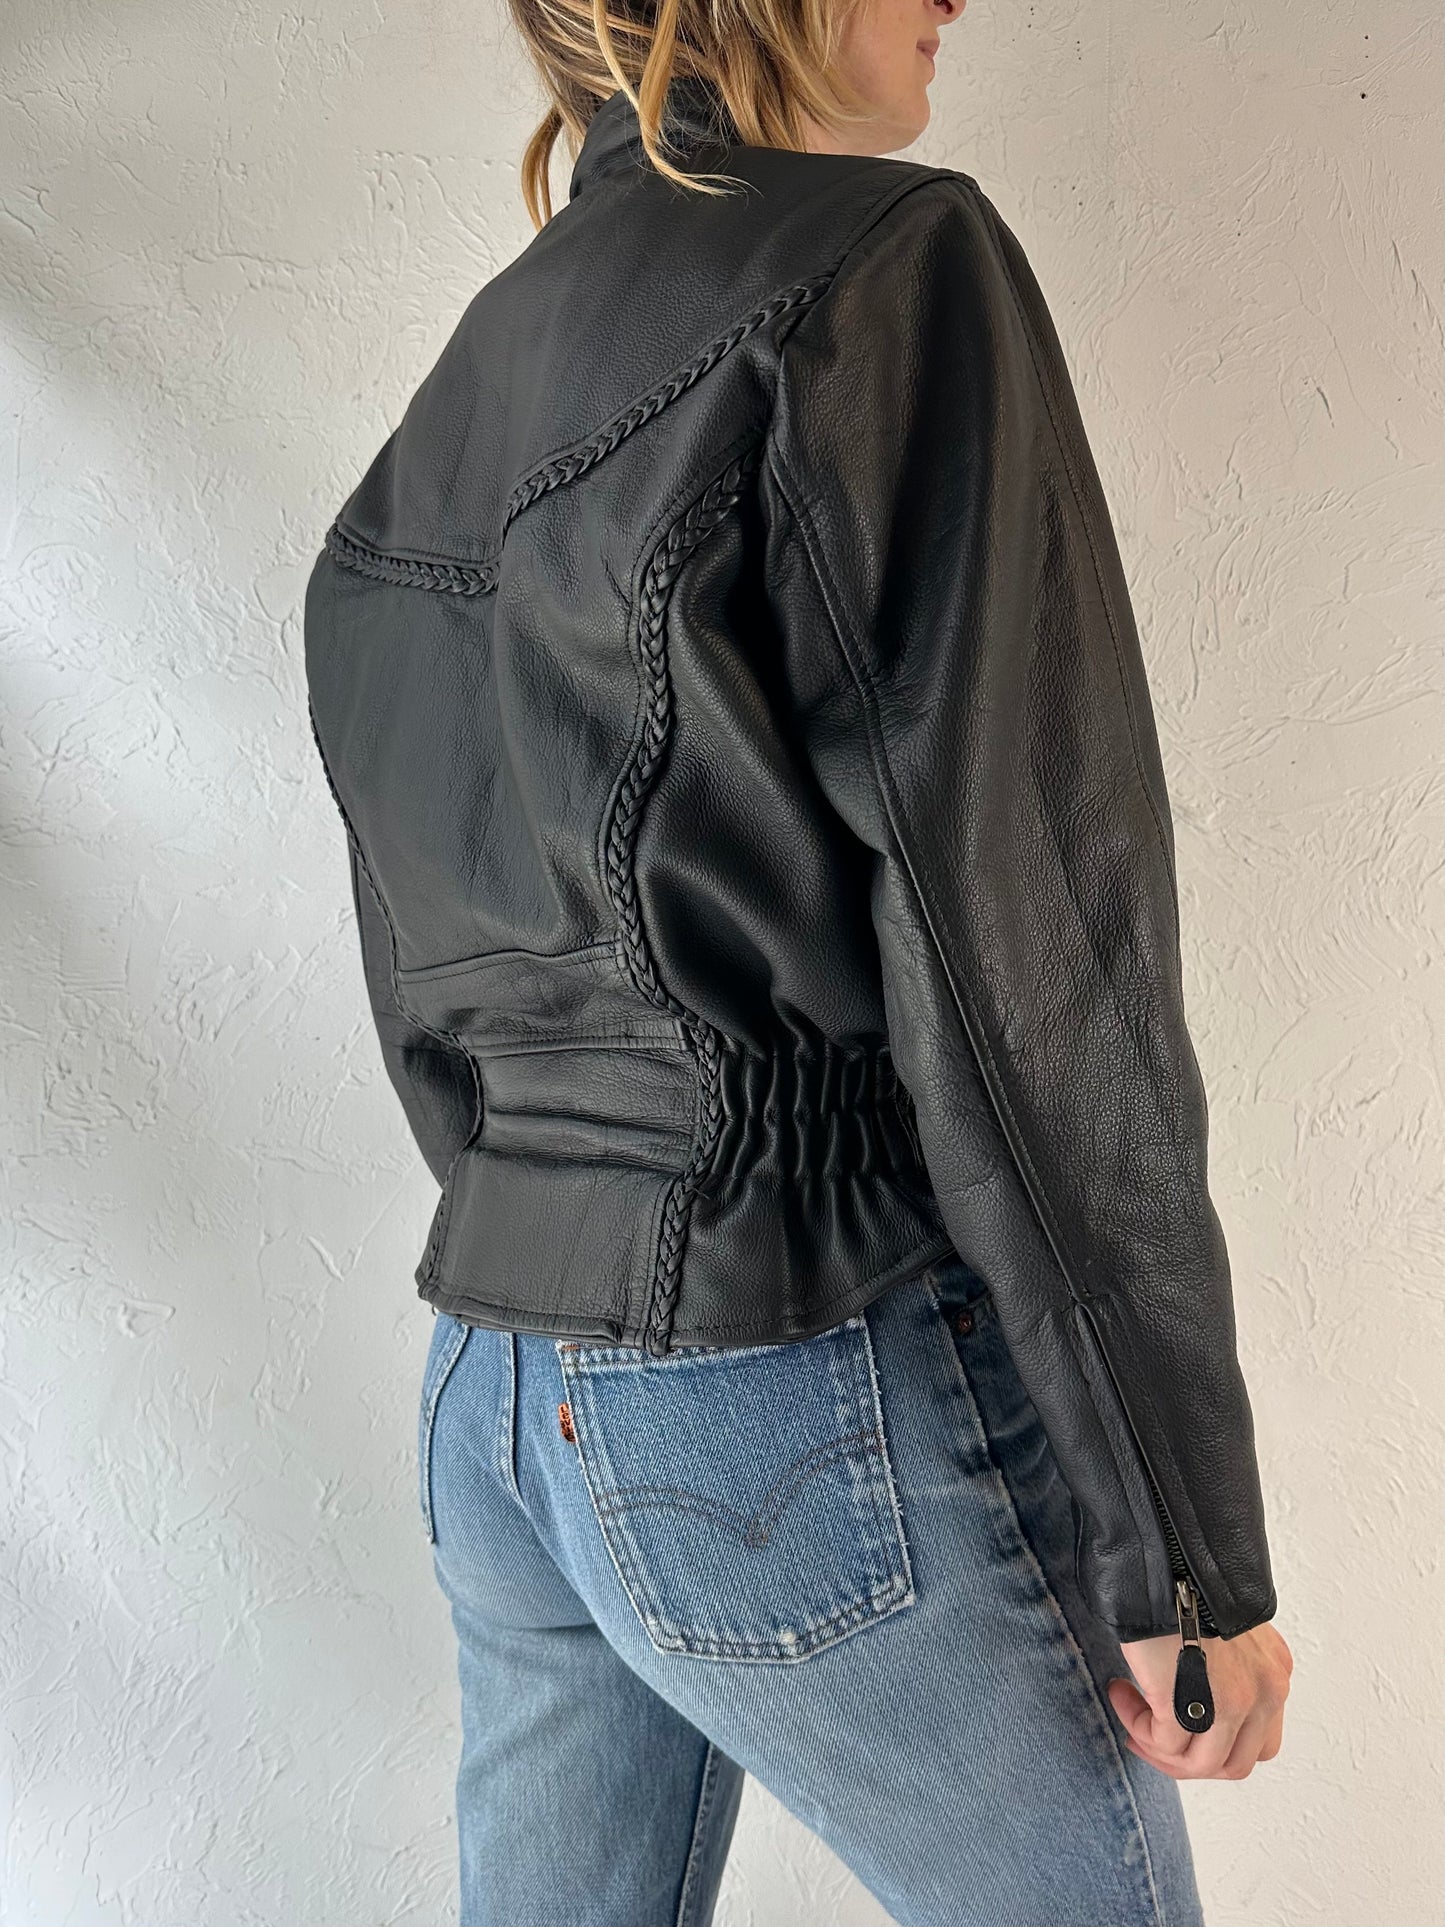 90s 'Hot Leathers' Heavy Duty Black Leather Jacket / Medium